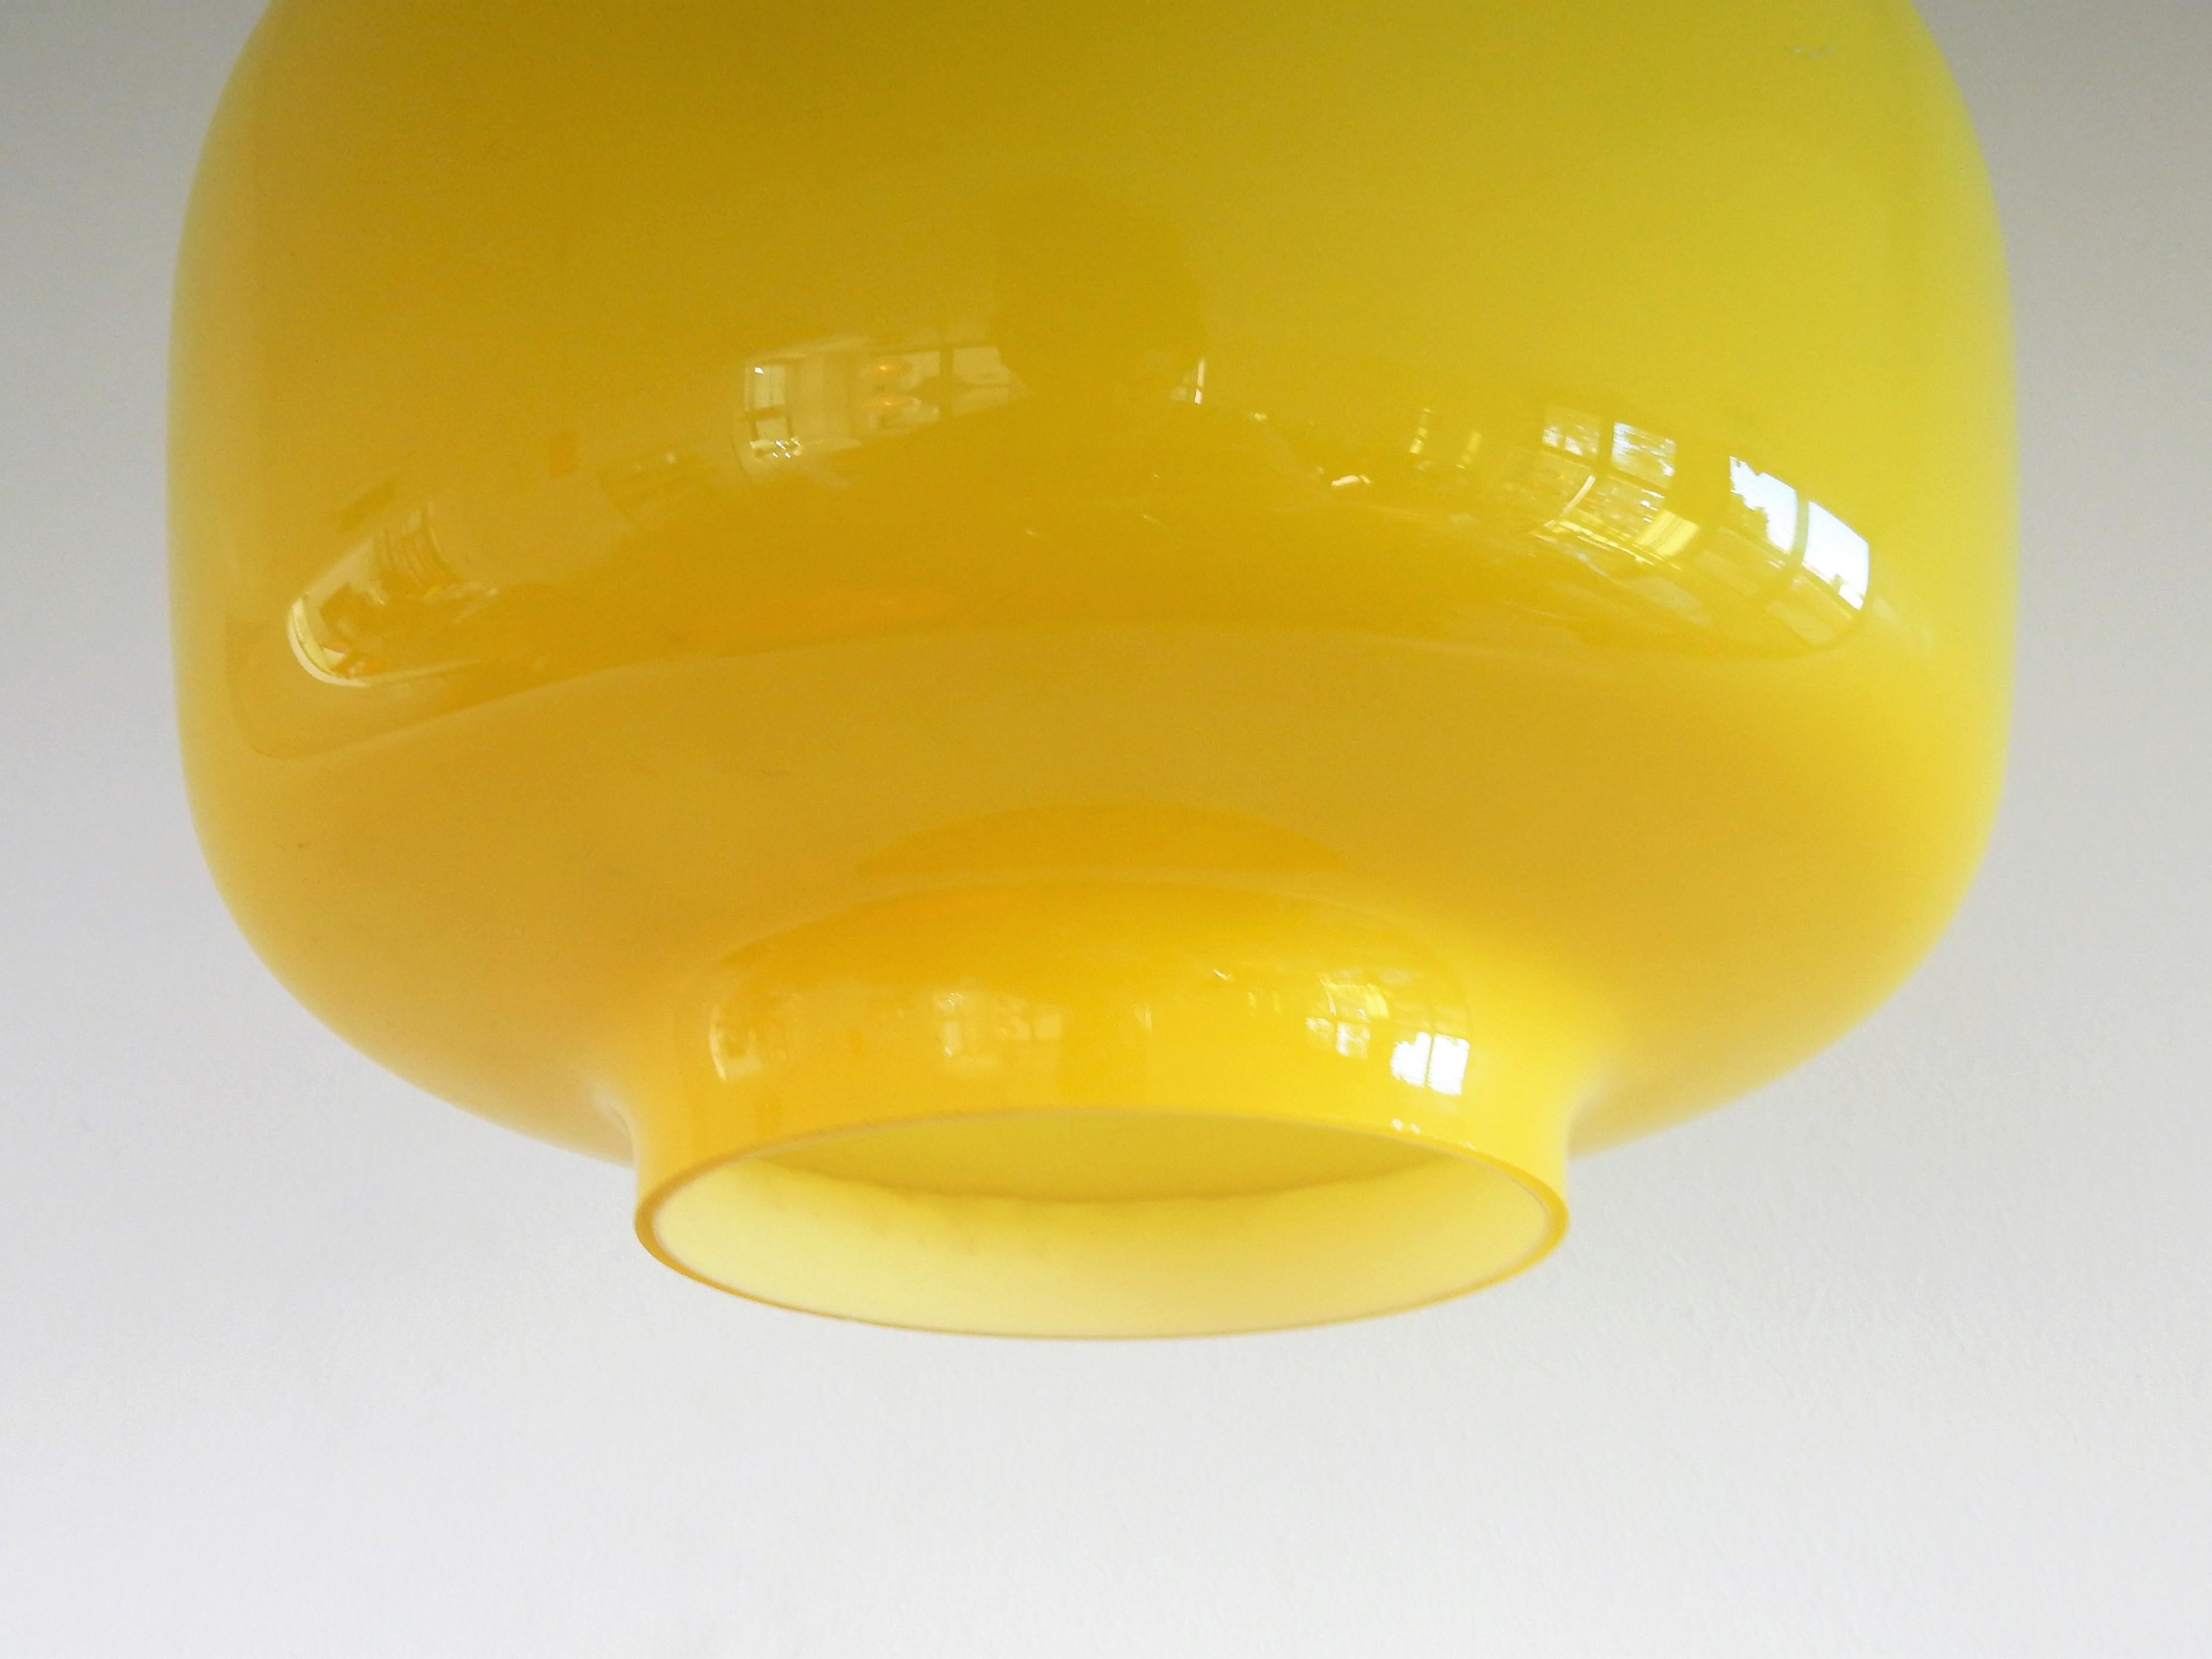 Mid-Century Modern Yellow 'Kreta' pendant lamp by Jacob Eiler Bang for Fog & Mørup, Denmark, 1960s